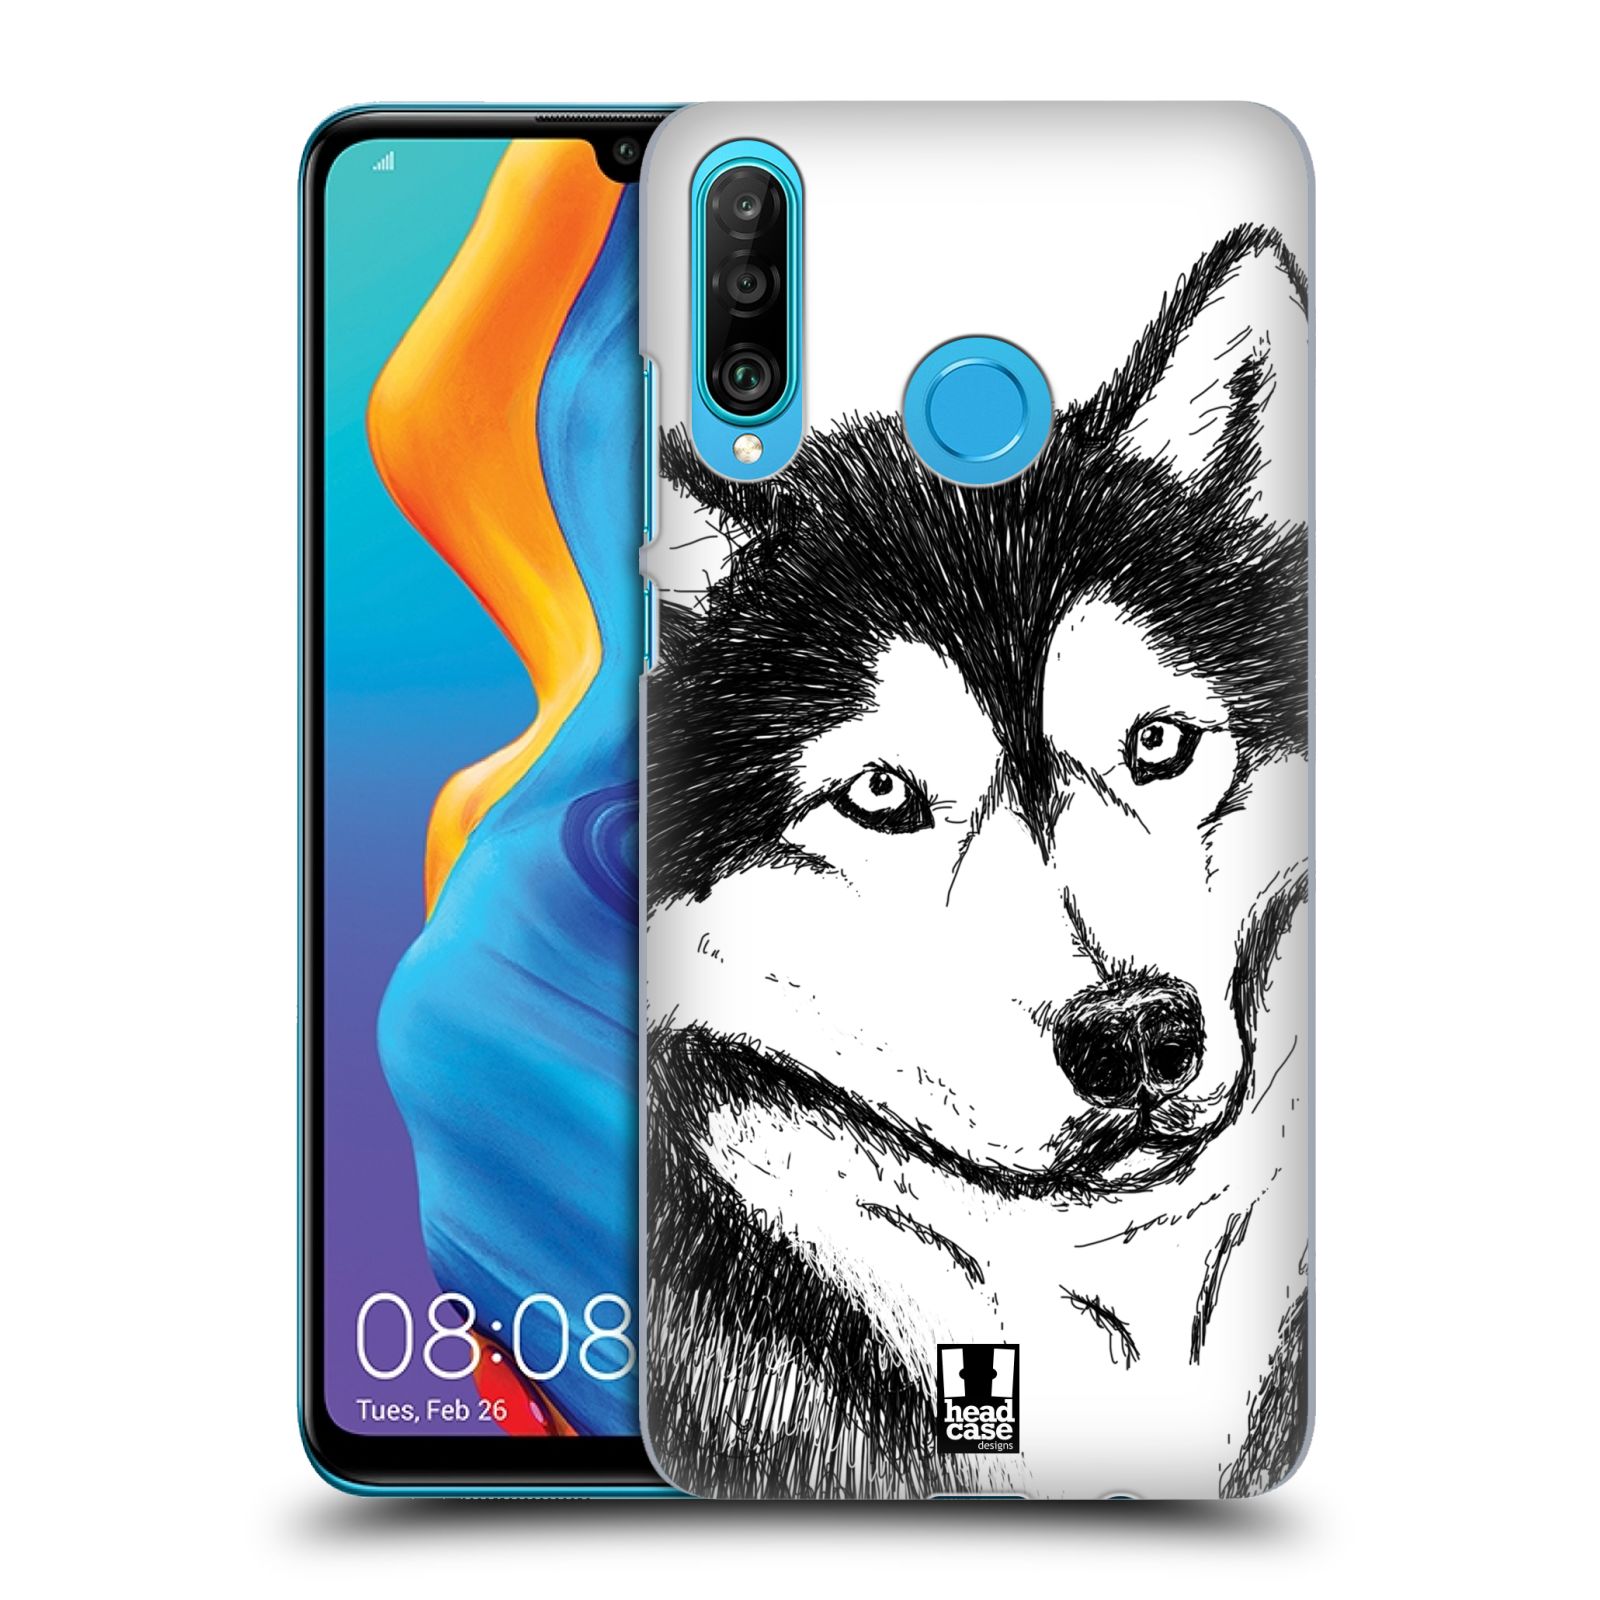 Pouzdro na mobil Huawei P30 LITE - HEAD CASE - vzor Kreslená zvířátka černá a bílá pes husky